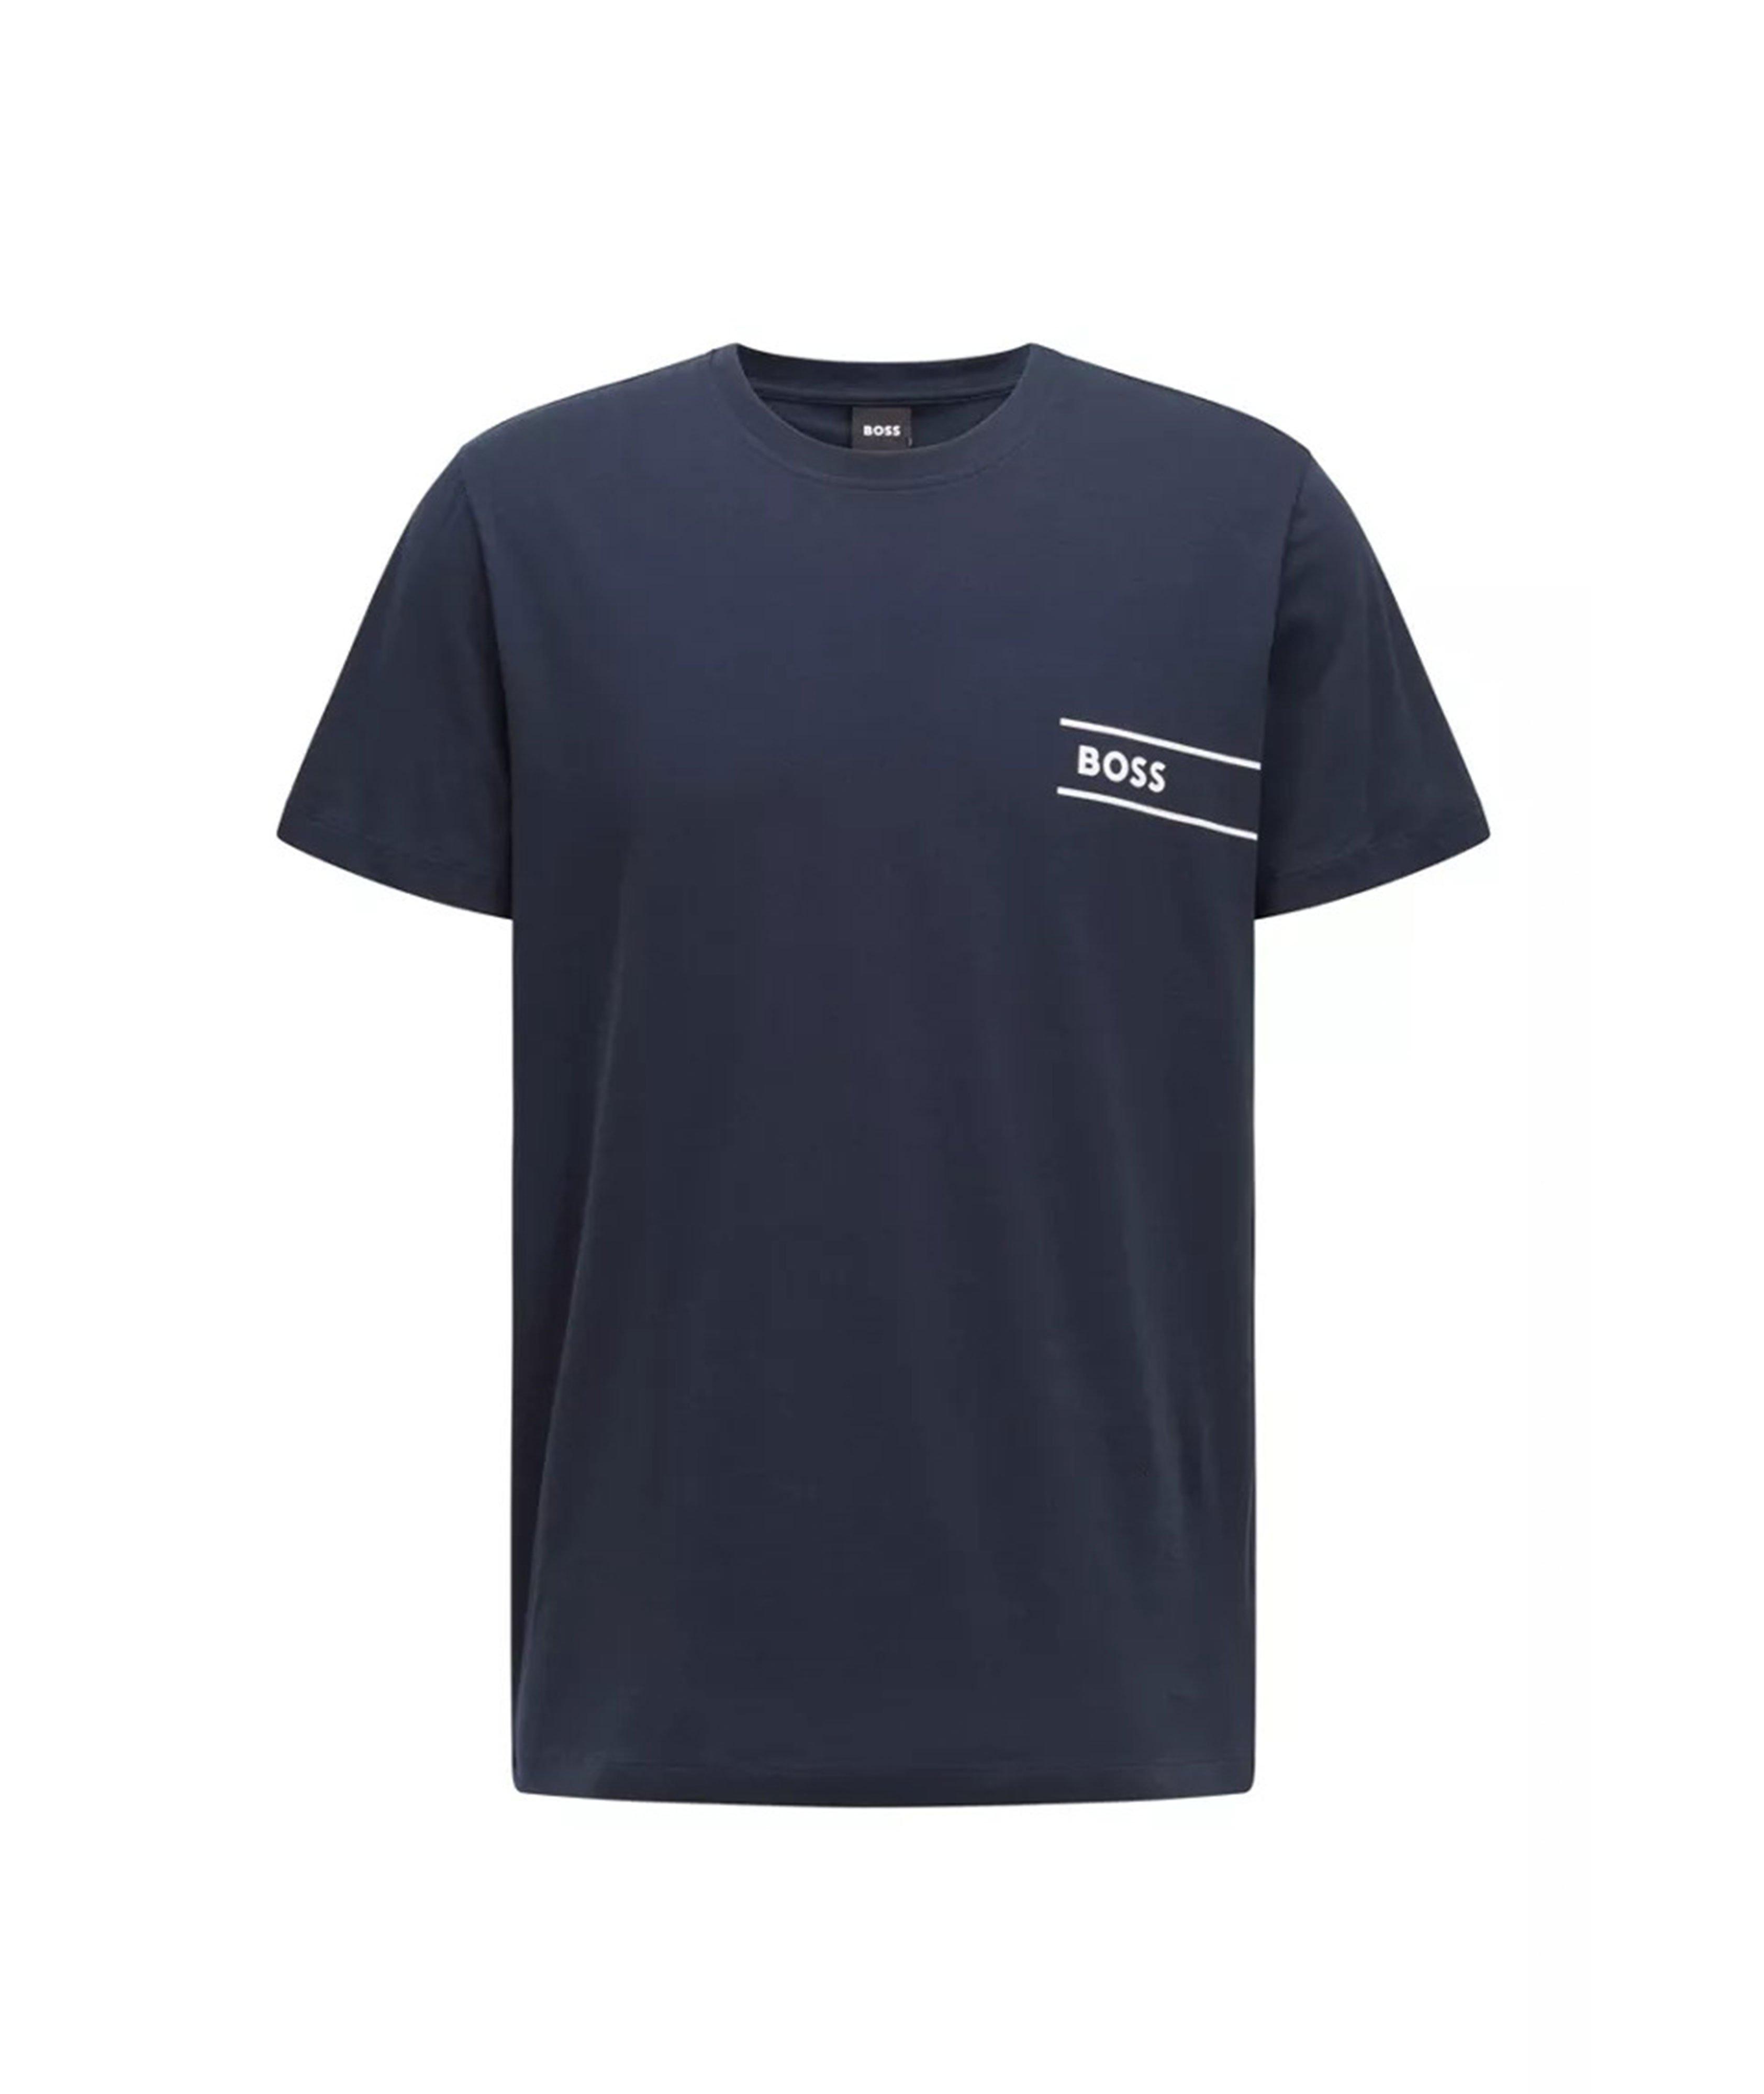 T-shirt en coton avec logo image 0